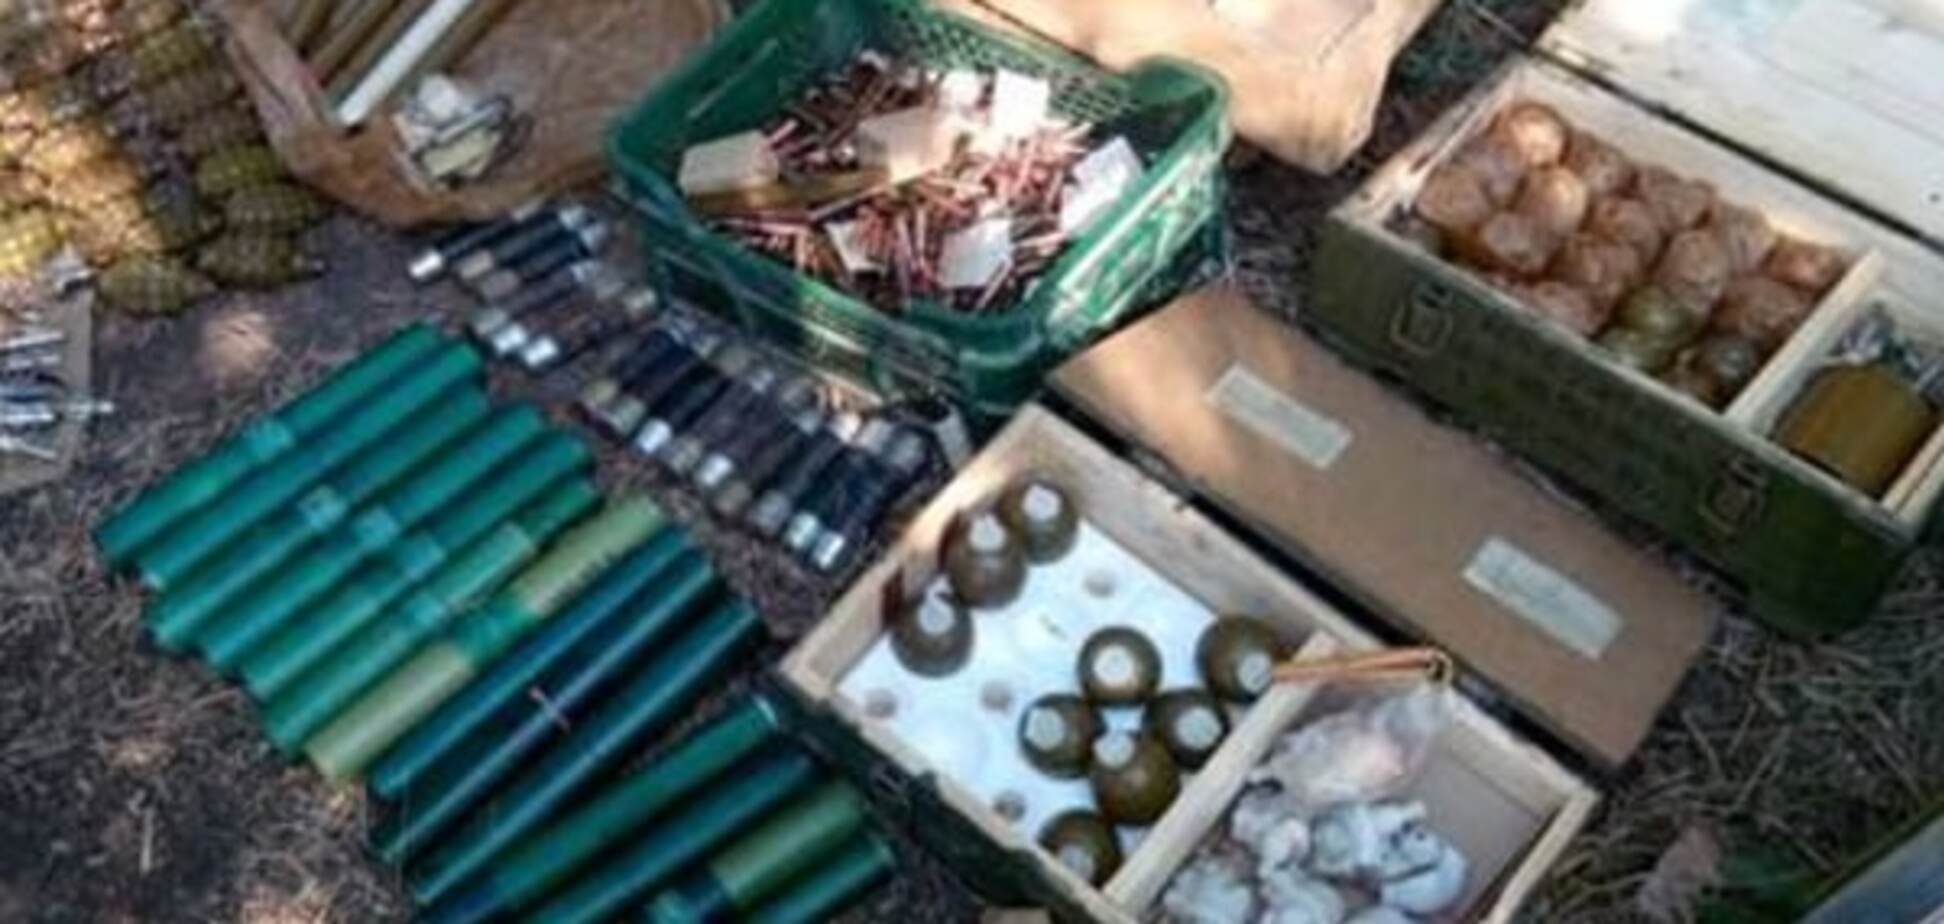 Ракеты, гранаты и тысячи патронов: силовики нашли тайник в зоне АТО